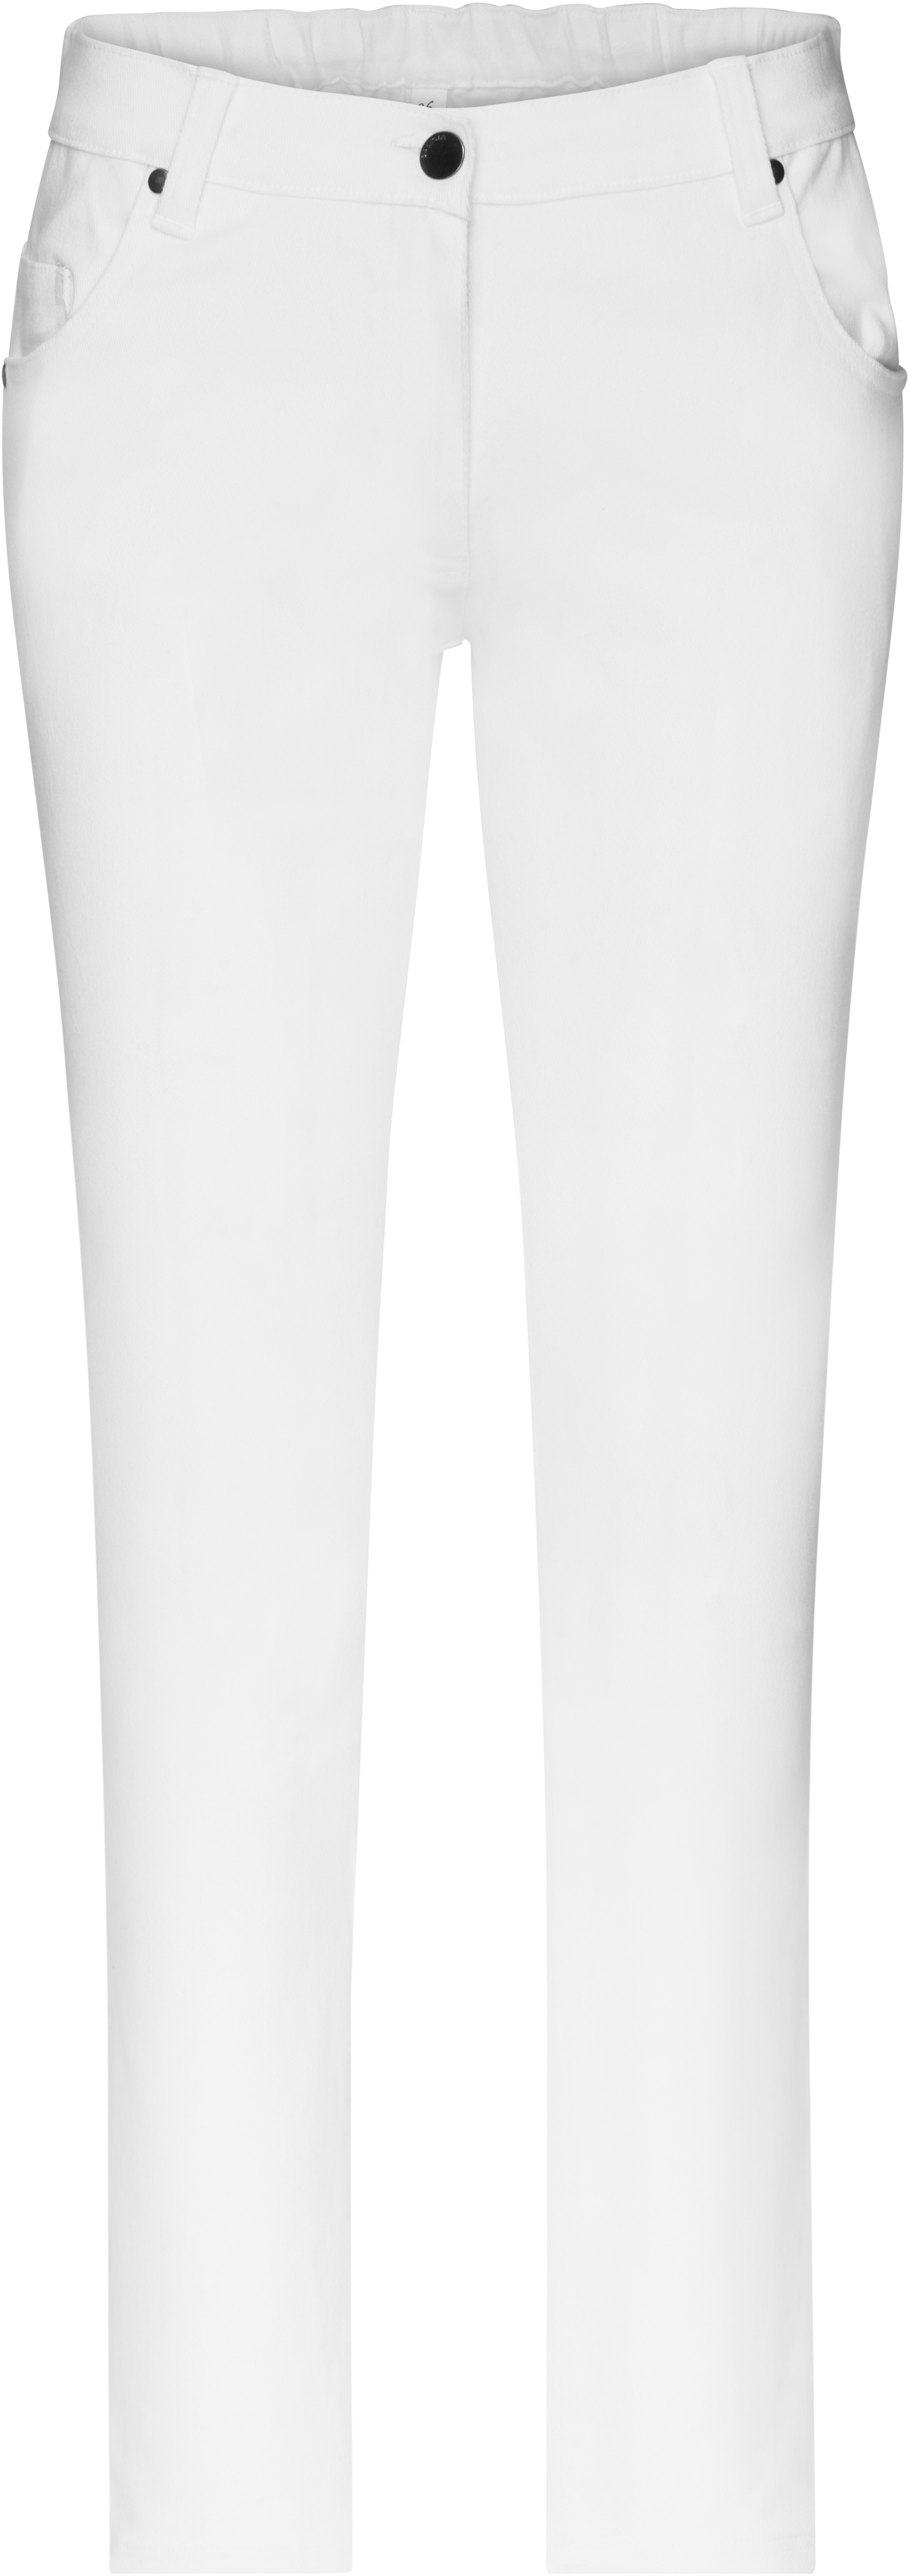 Dámské elastické kalhoty JN 3001 Barva: bílá, Velikost: 38